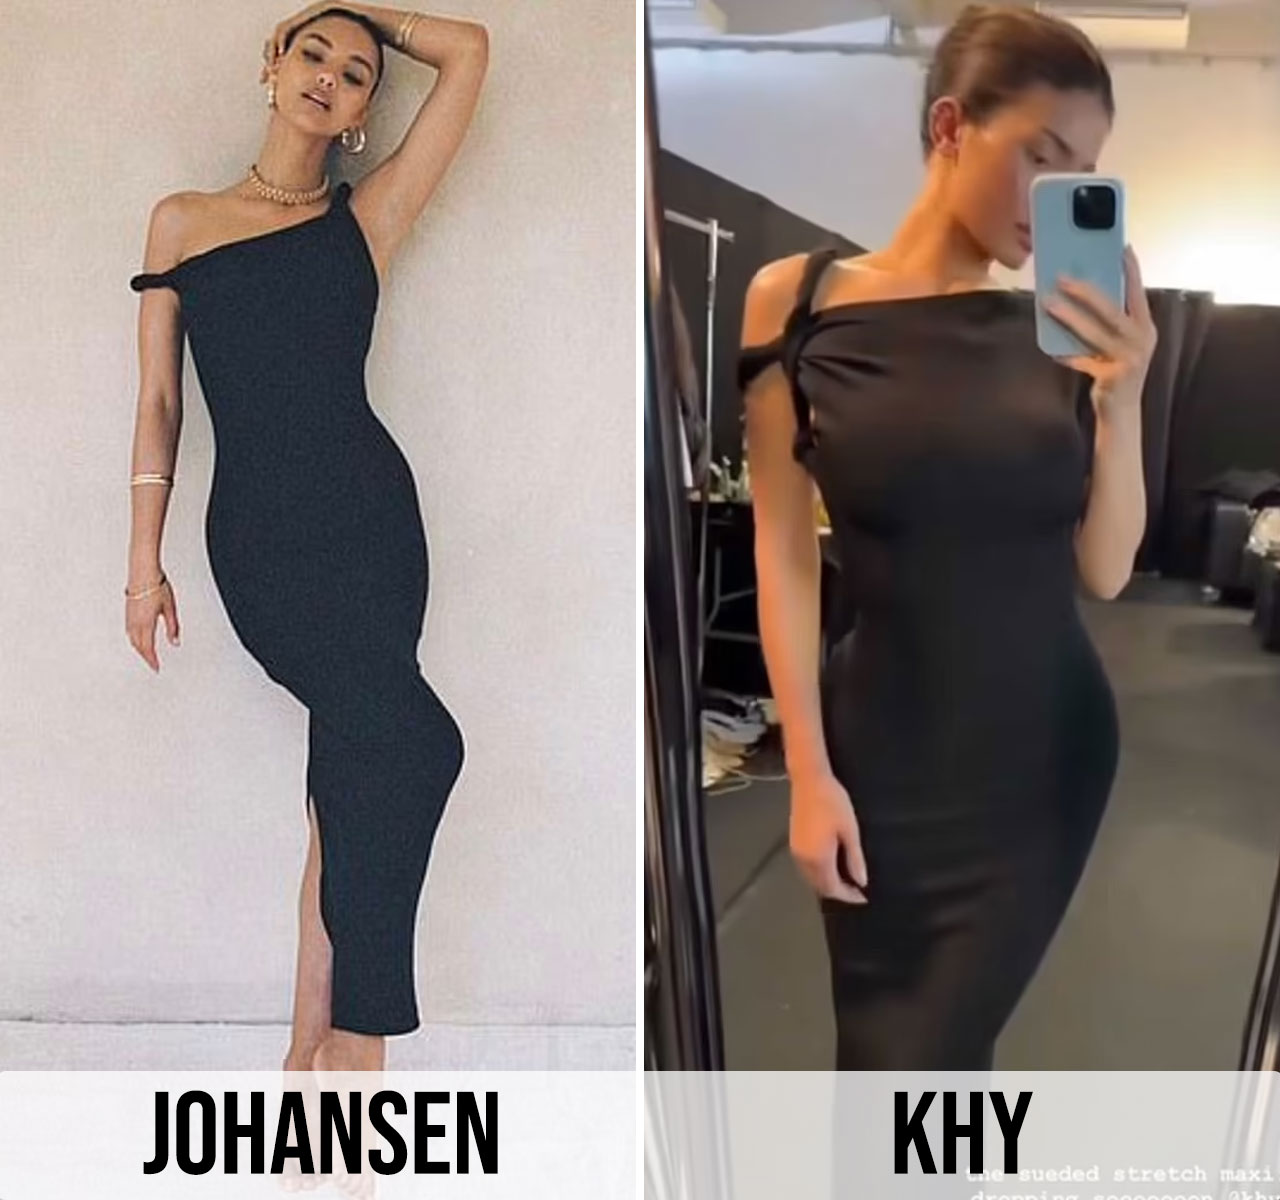 Johansen vs Kylie Jenner black dress design